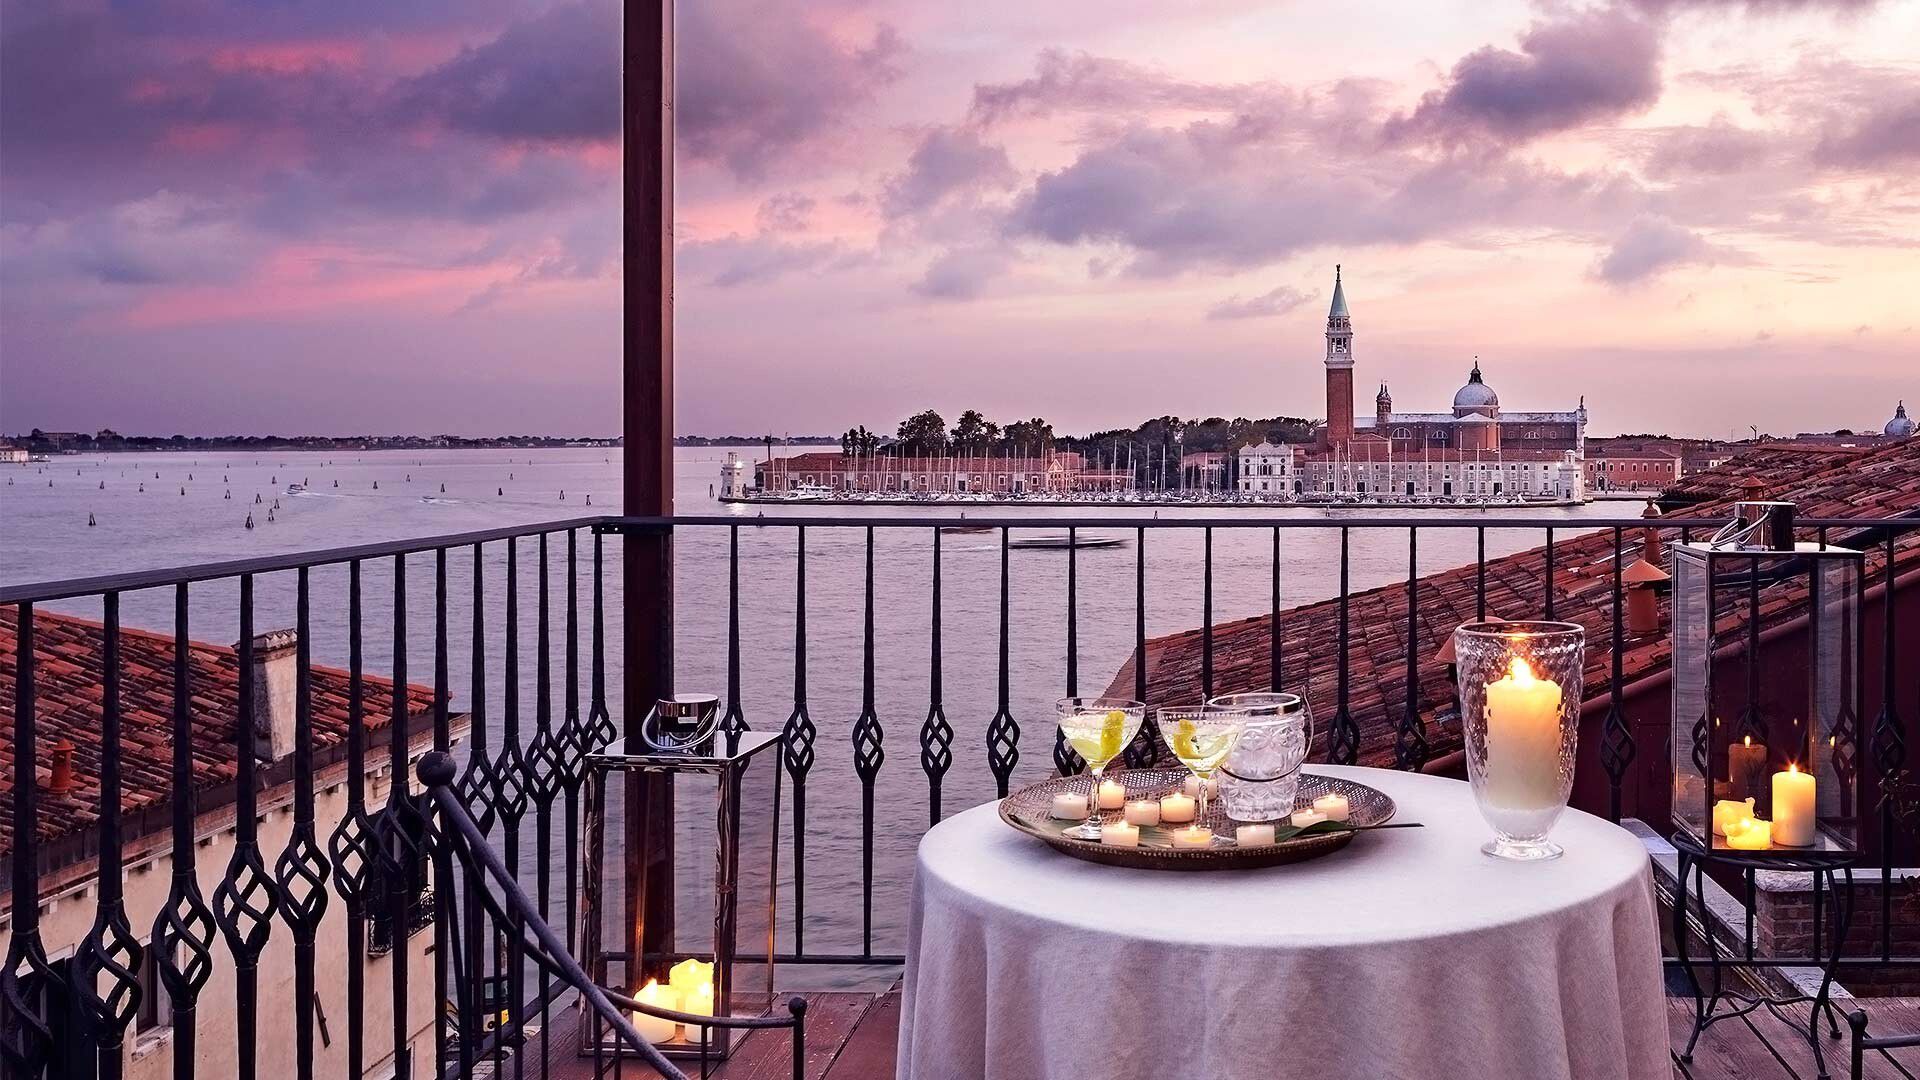 La vista panoramica su Venezia dell'Hotel Metropole.